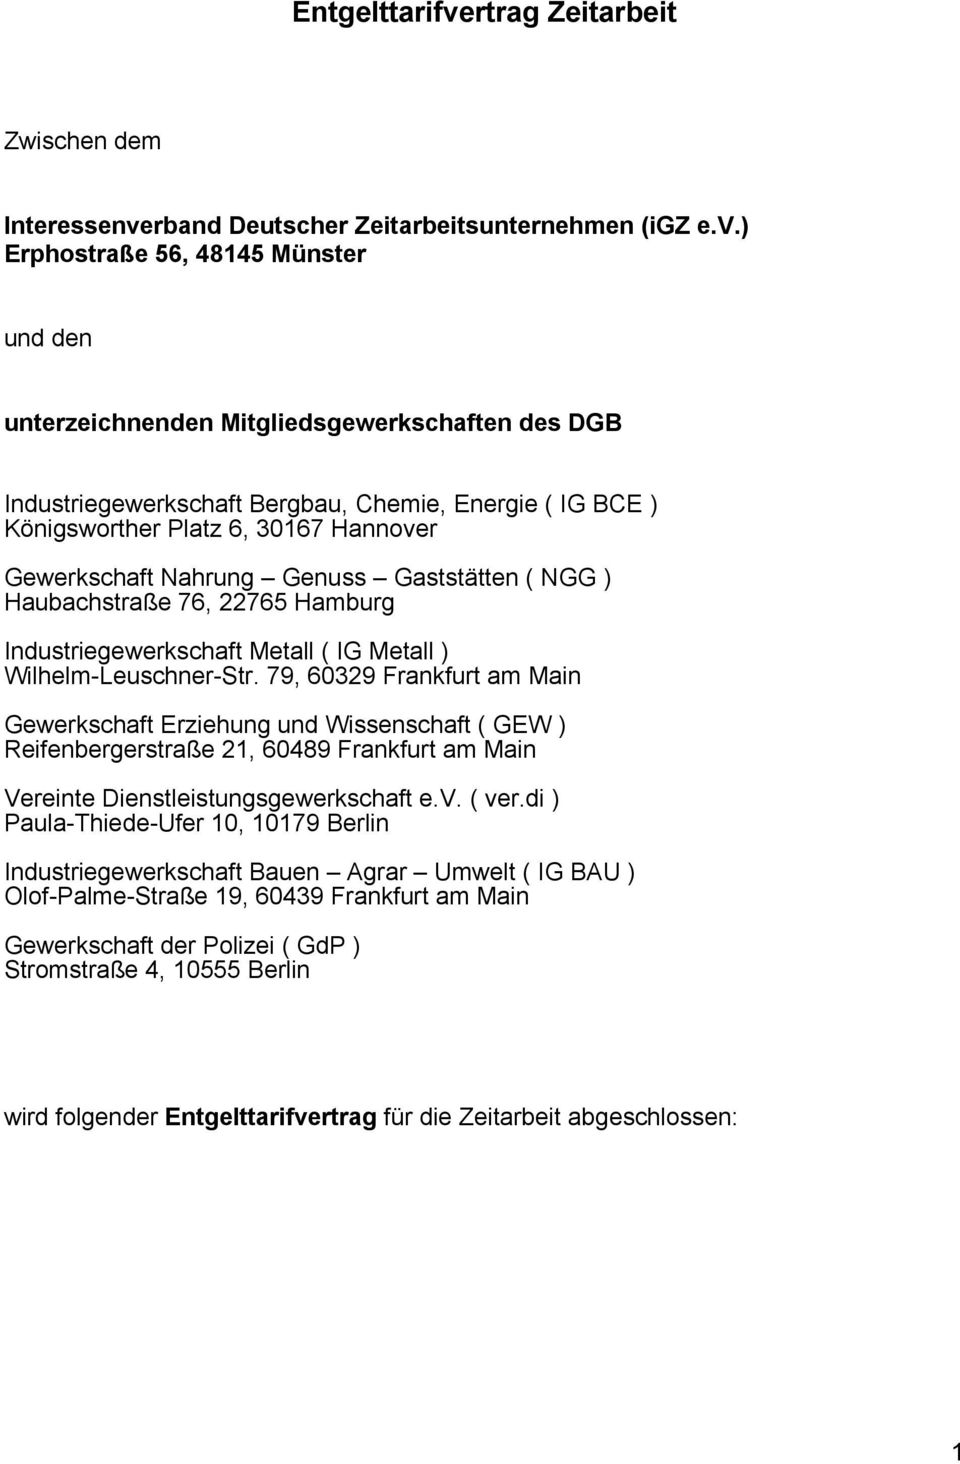 rband Deutscher Zeitarbeitsunternehmen (igz e.v.